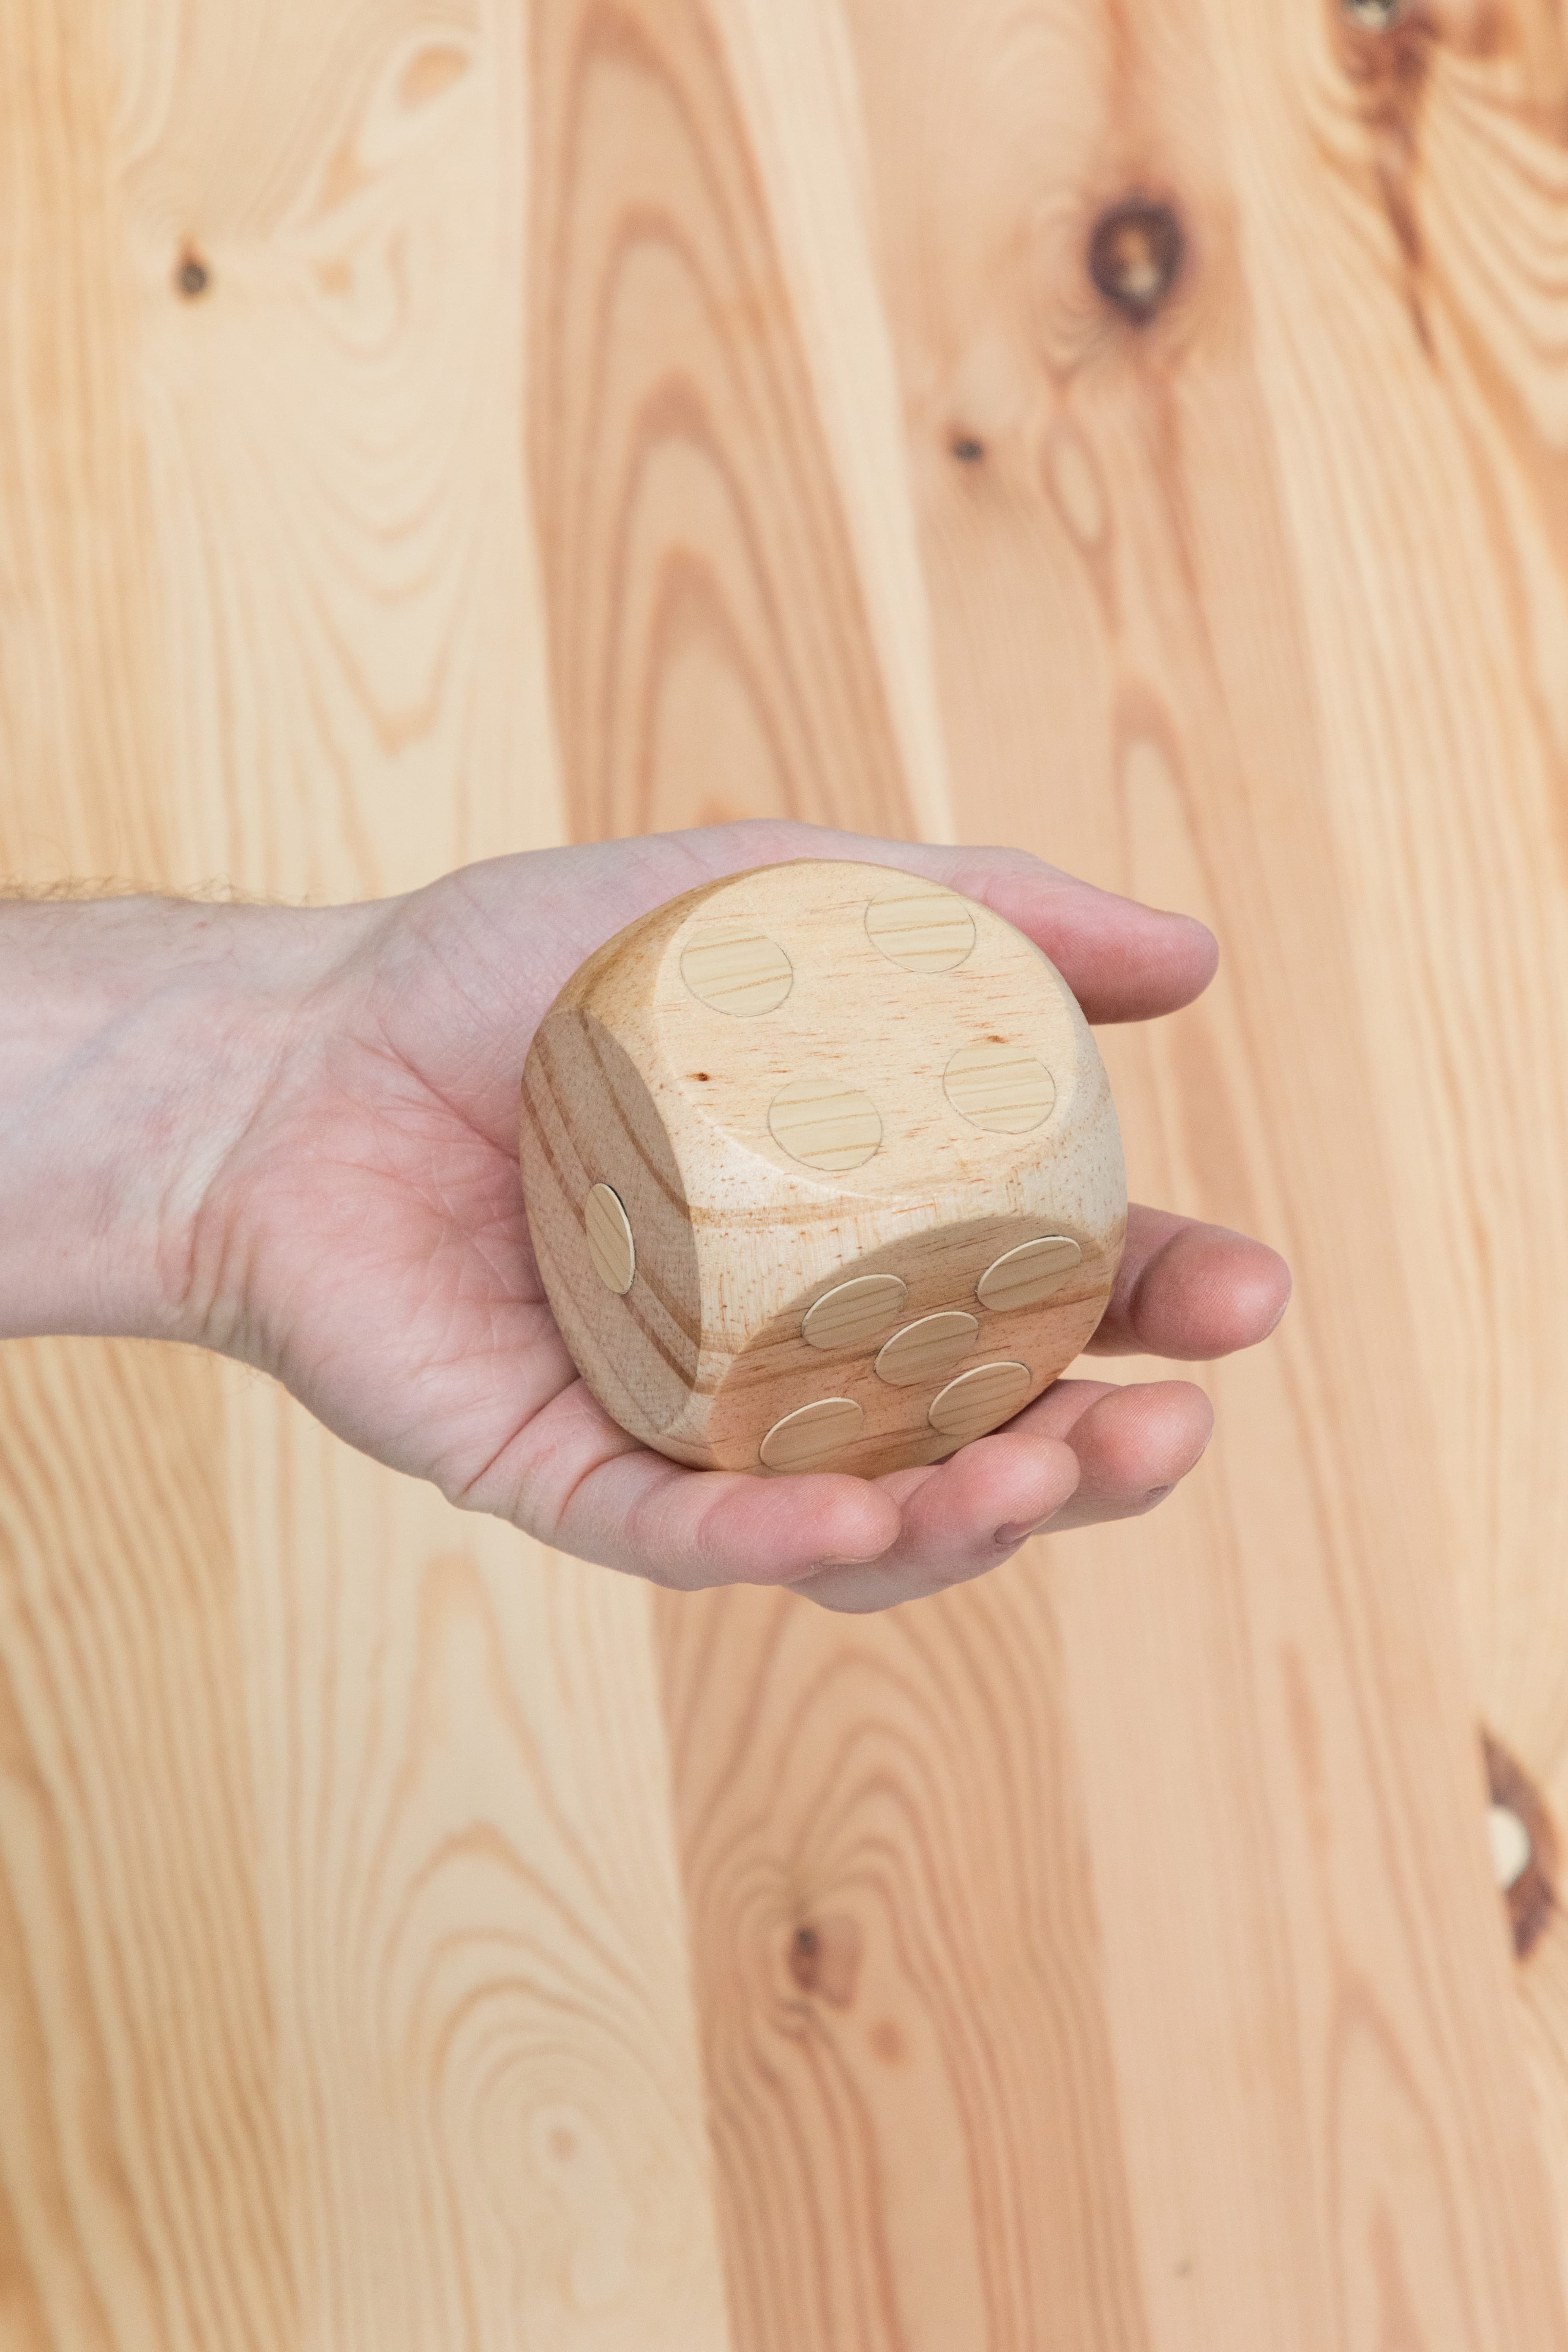 Lukas Marstaller, *Faux Wood Dice*, Wood, Faux-wood sticker